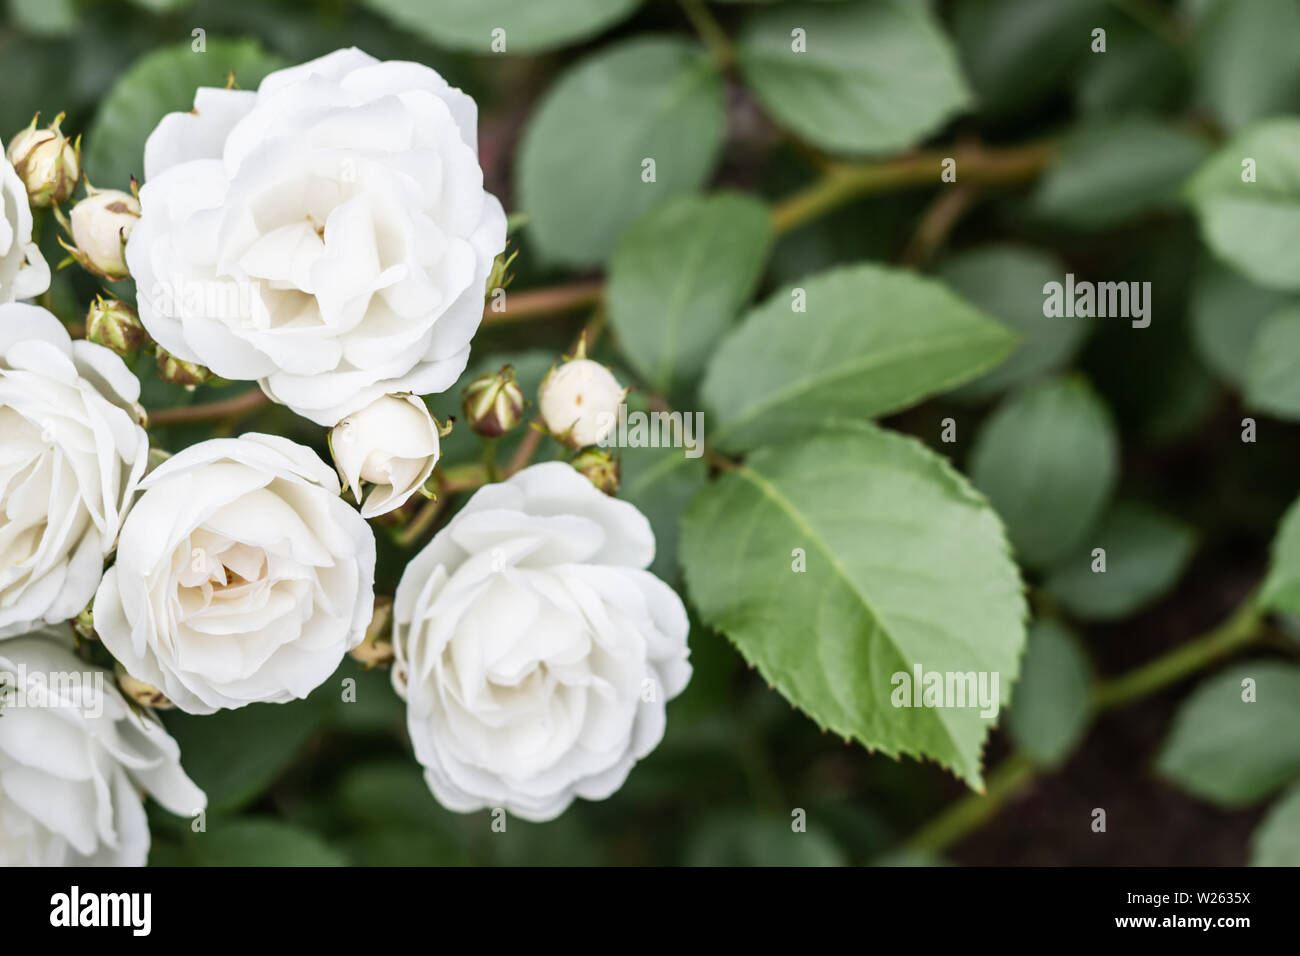 Weiße Aspirin Rose auf natürlichem grünen Laub Hintergrund mit Kopie Raum. Stockfoto